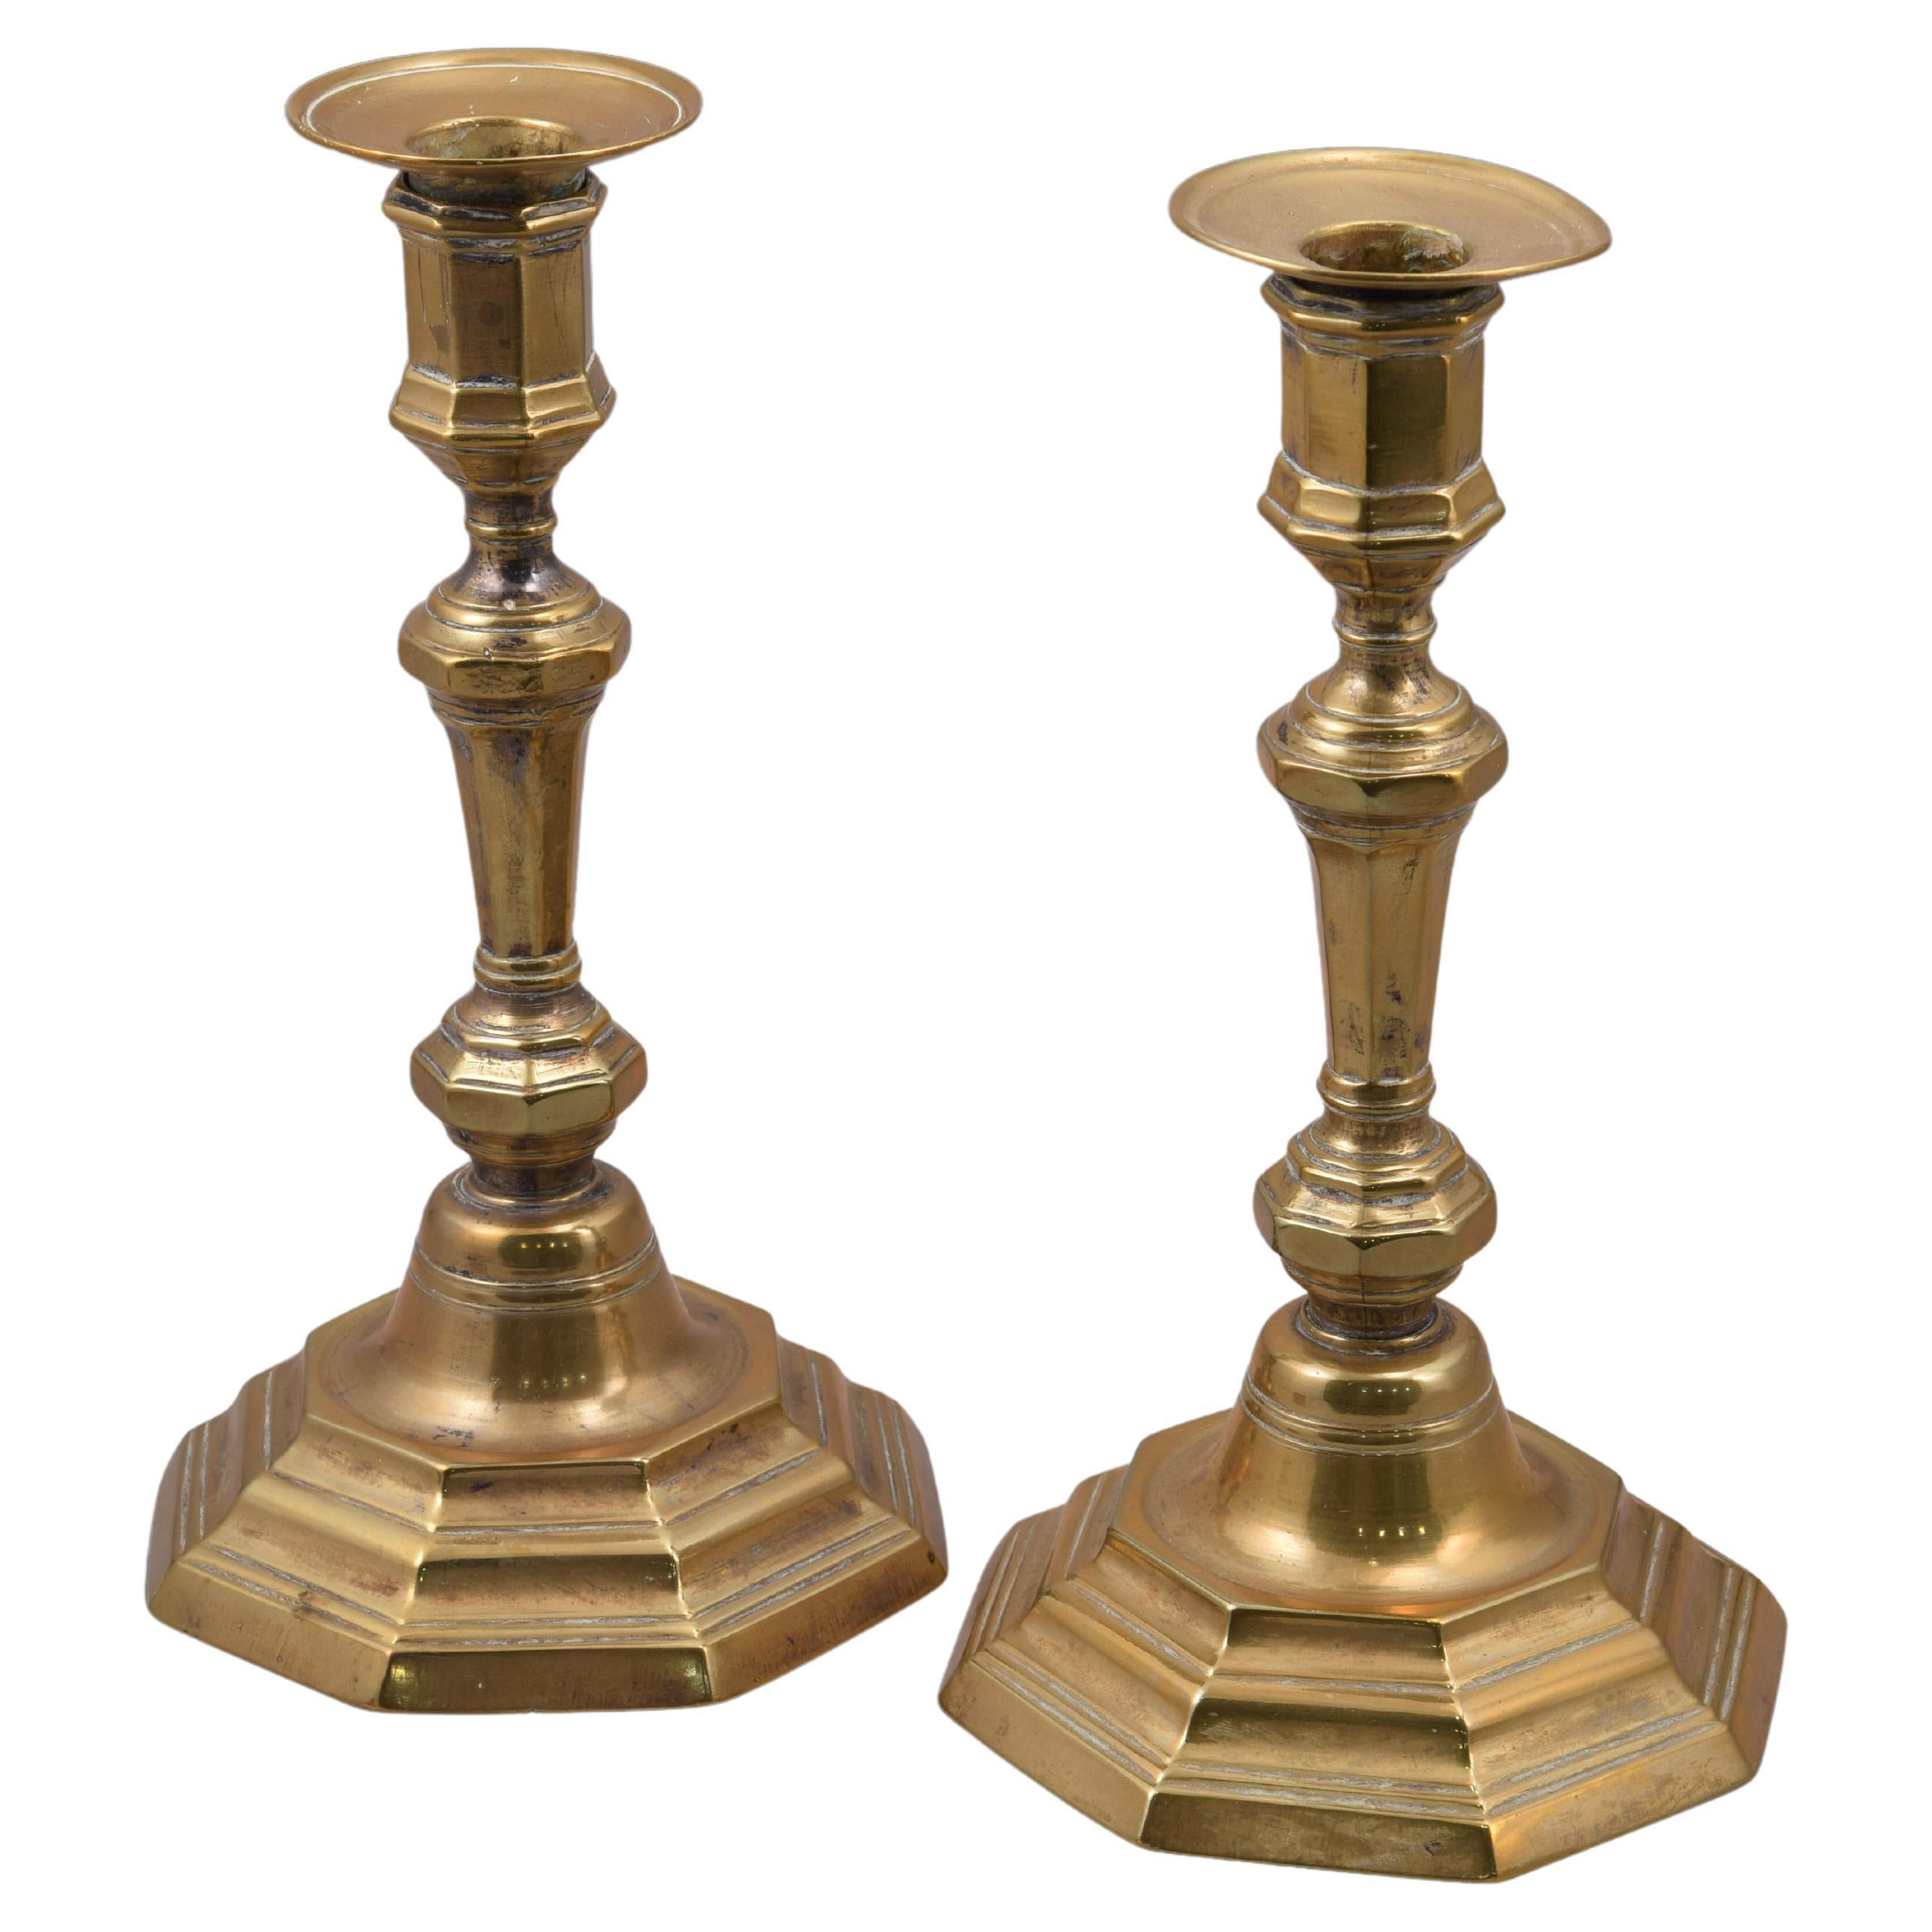 Paire de chandeliers ou de porte-bougies. Bronze. XVIIIe siècle.